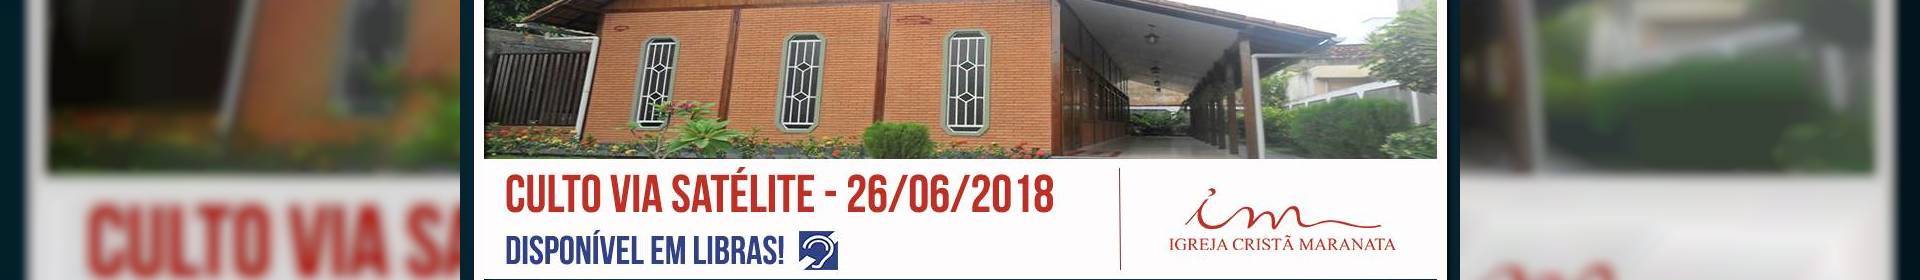 Culto via satélite da Igreja Cristã Maranata - 26/06/2018